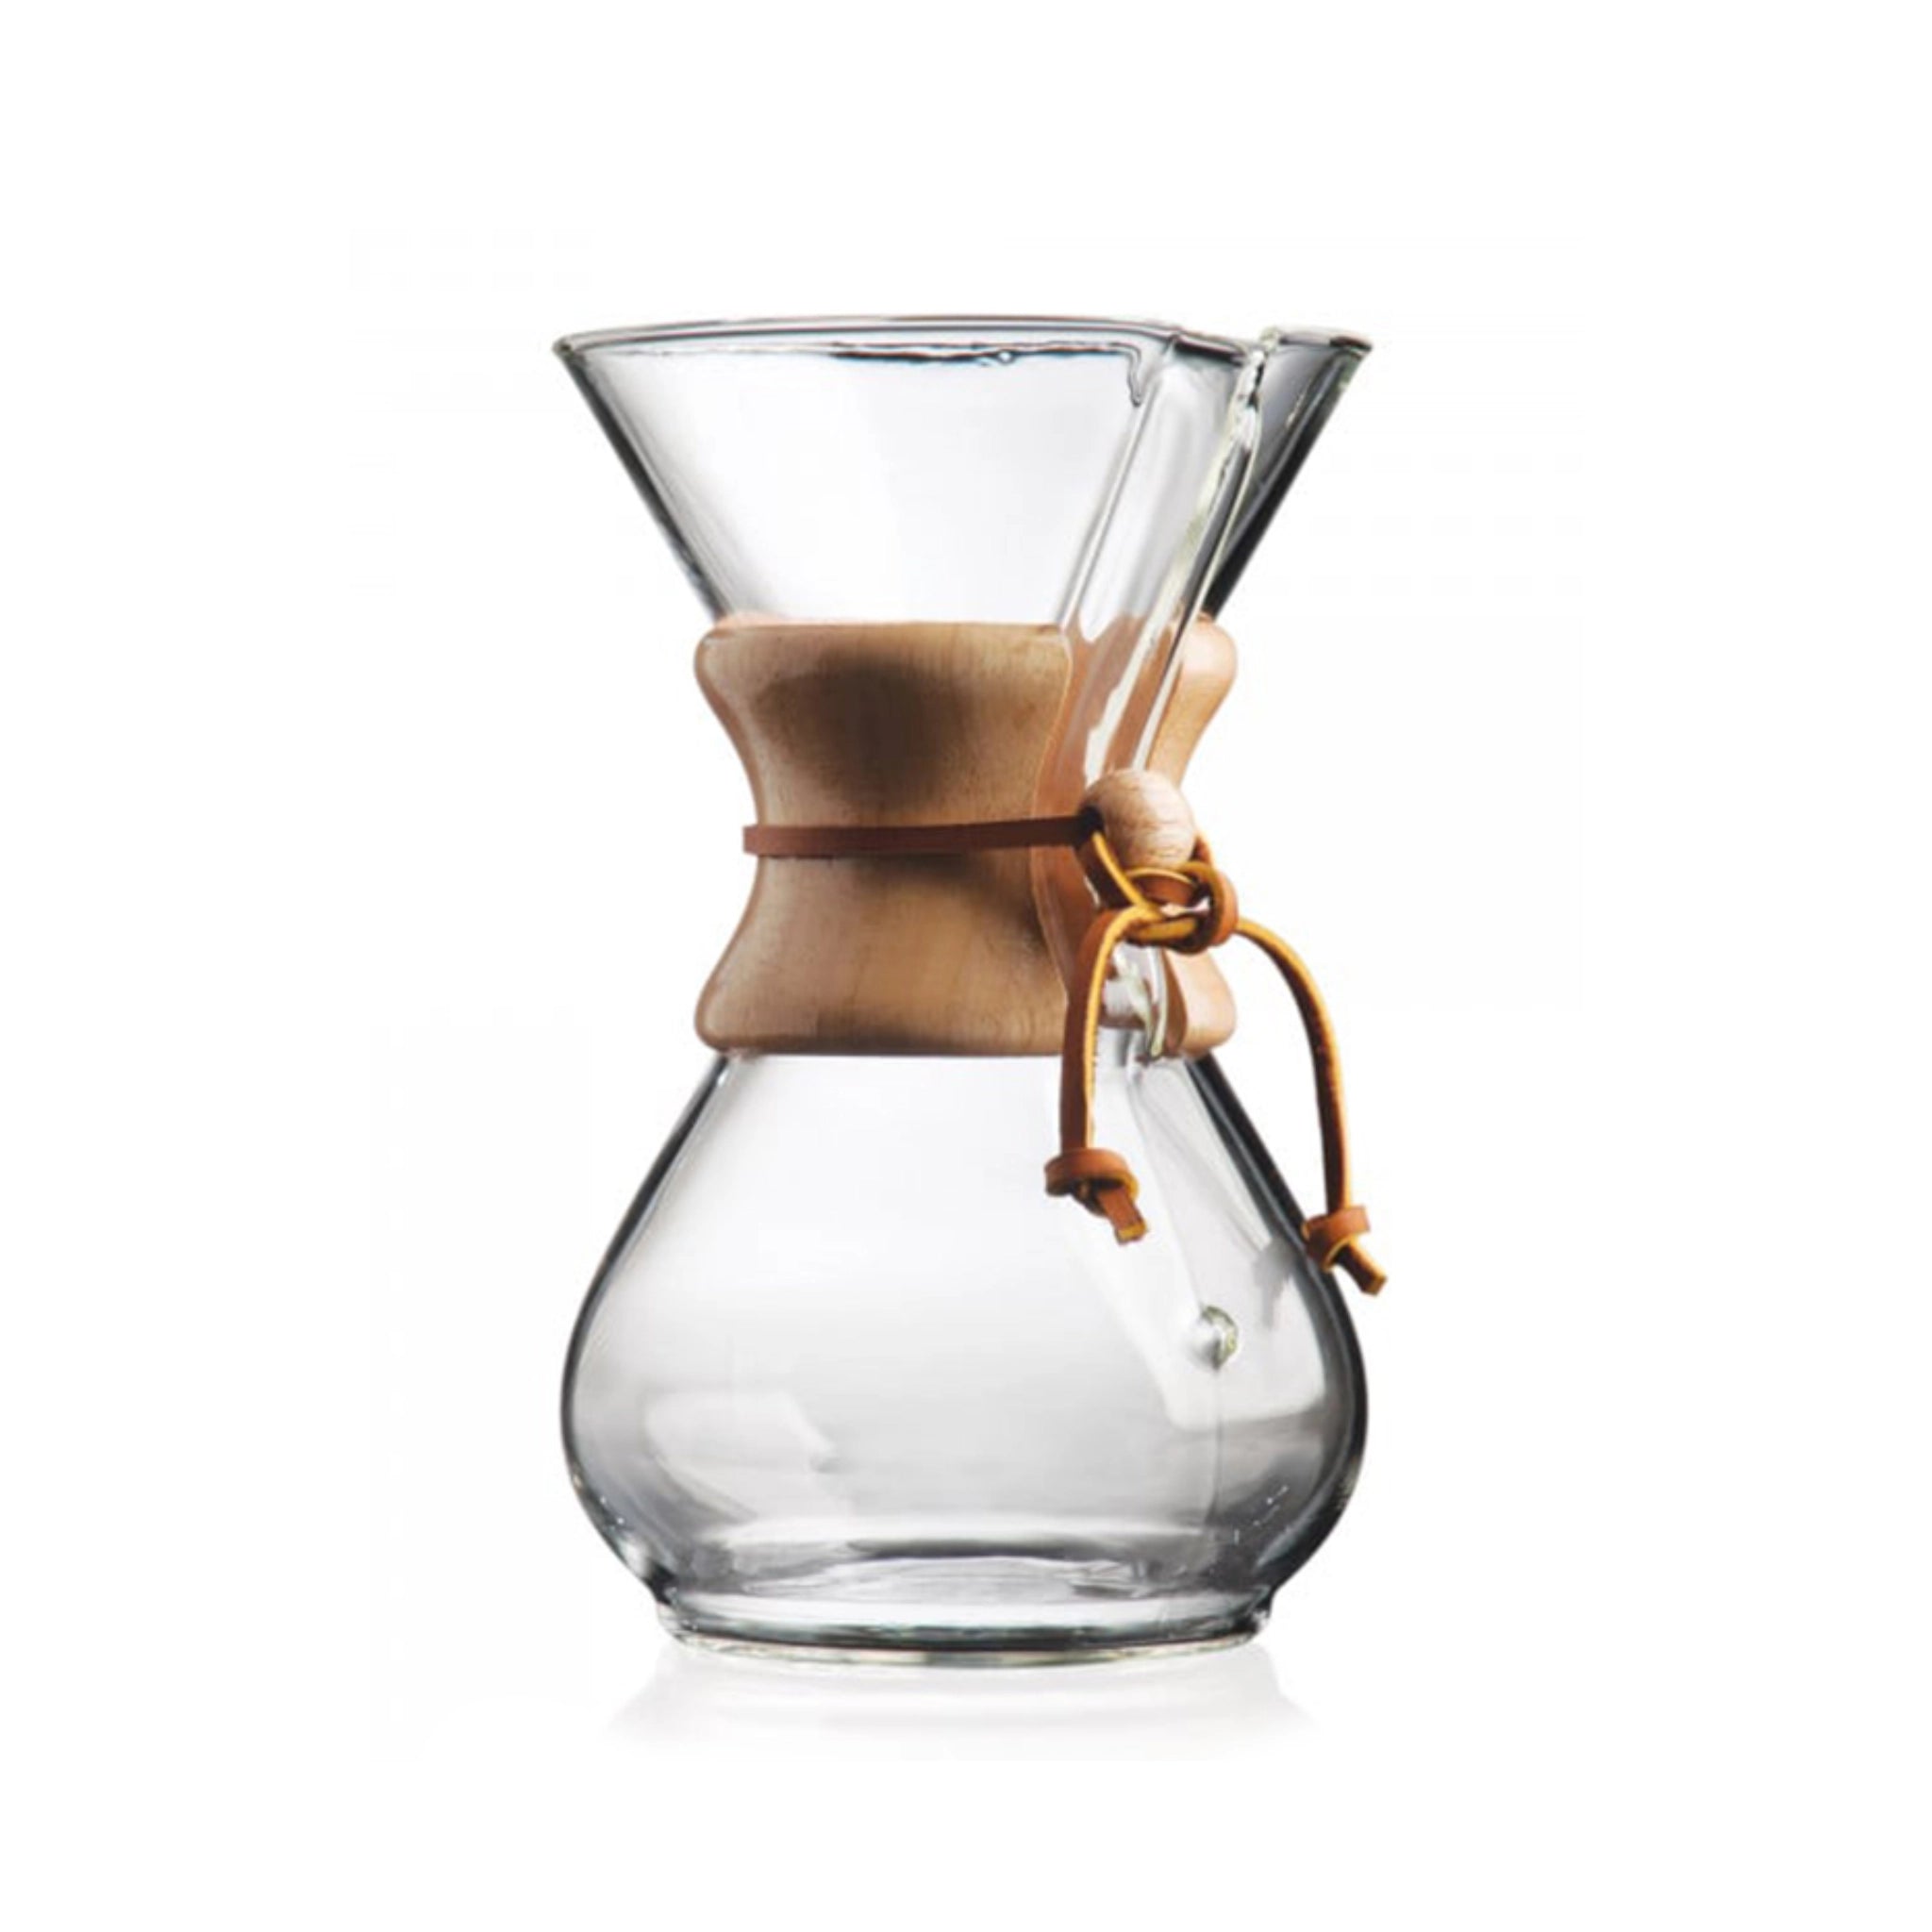 Produktbild der Chemex Glaskaraffe vor weißem Hintergrund (Hero Shot). Das Design erinnert an eine Sanduhr die oben offen ist. Am schmalen Teil ist eine Holumanschette angebracht, die mit einem Lederband gesichert ist. Version für 6 Tassen Kaffee.